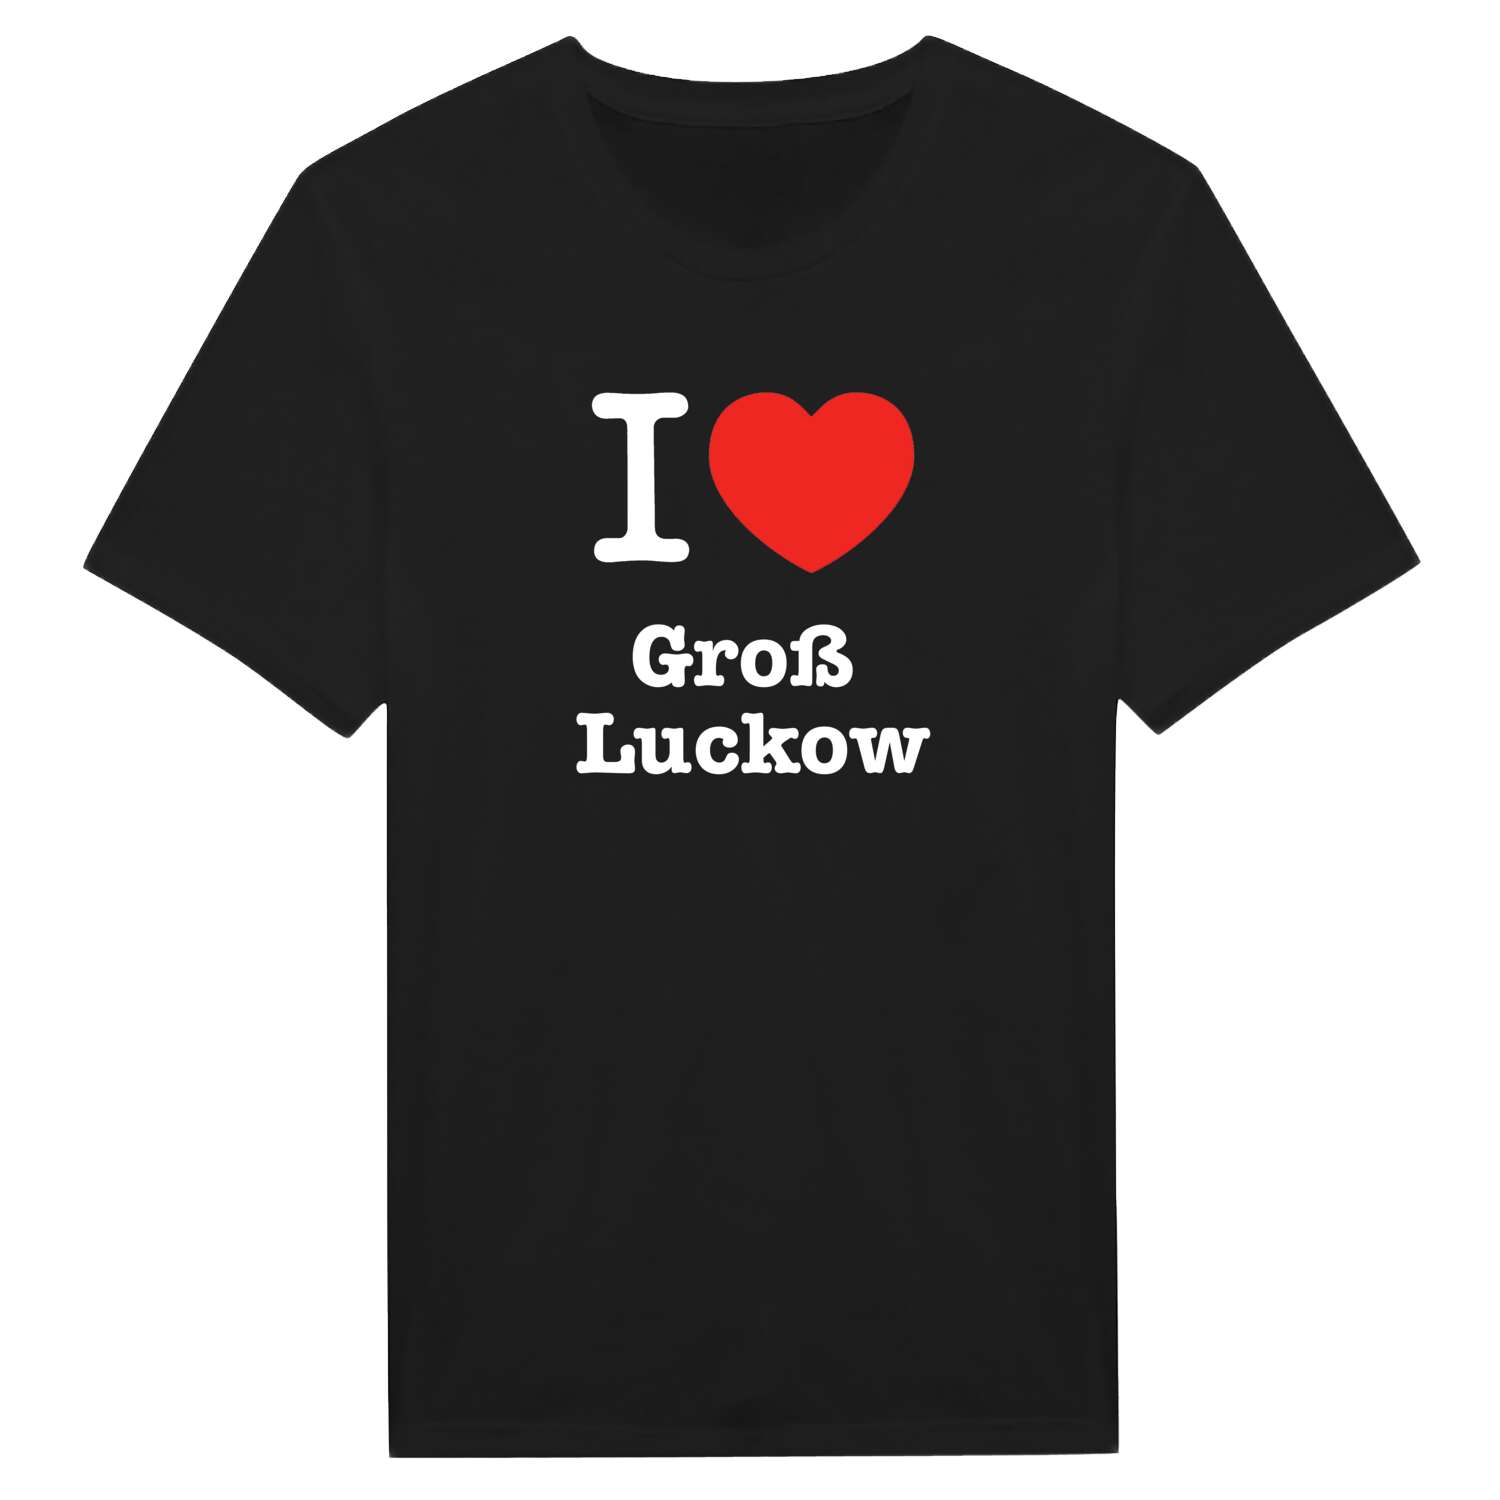 Groß Luckow T-Shirt »I love«